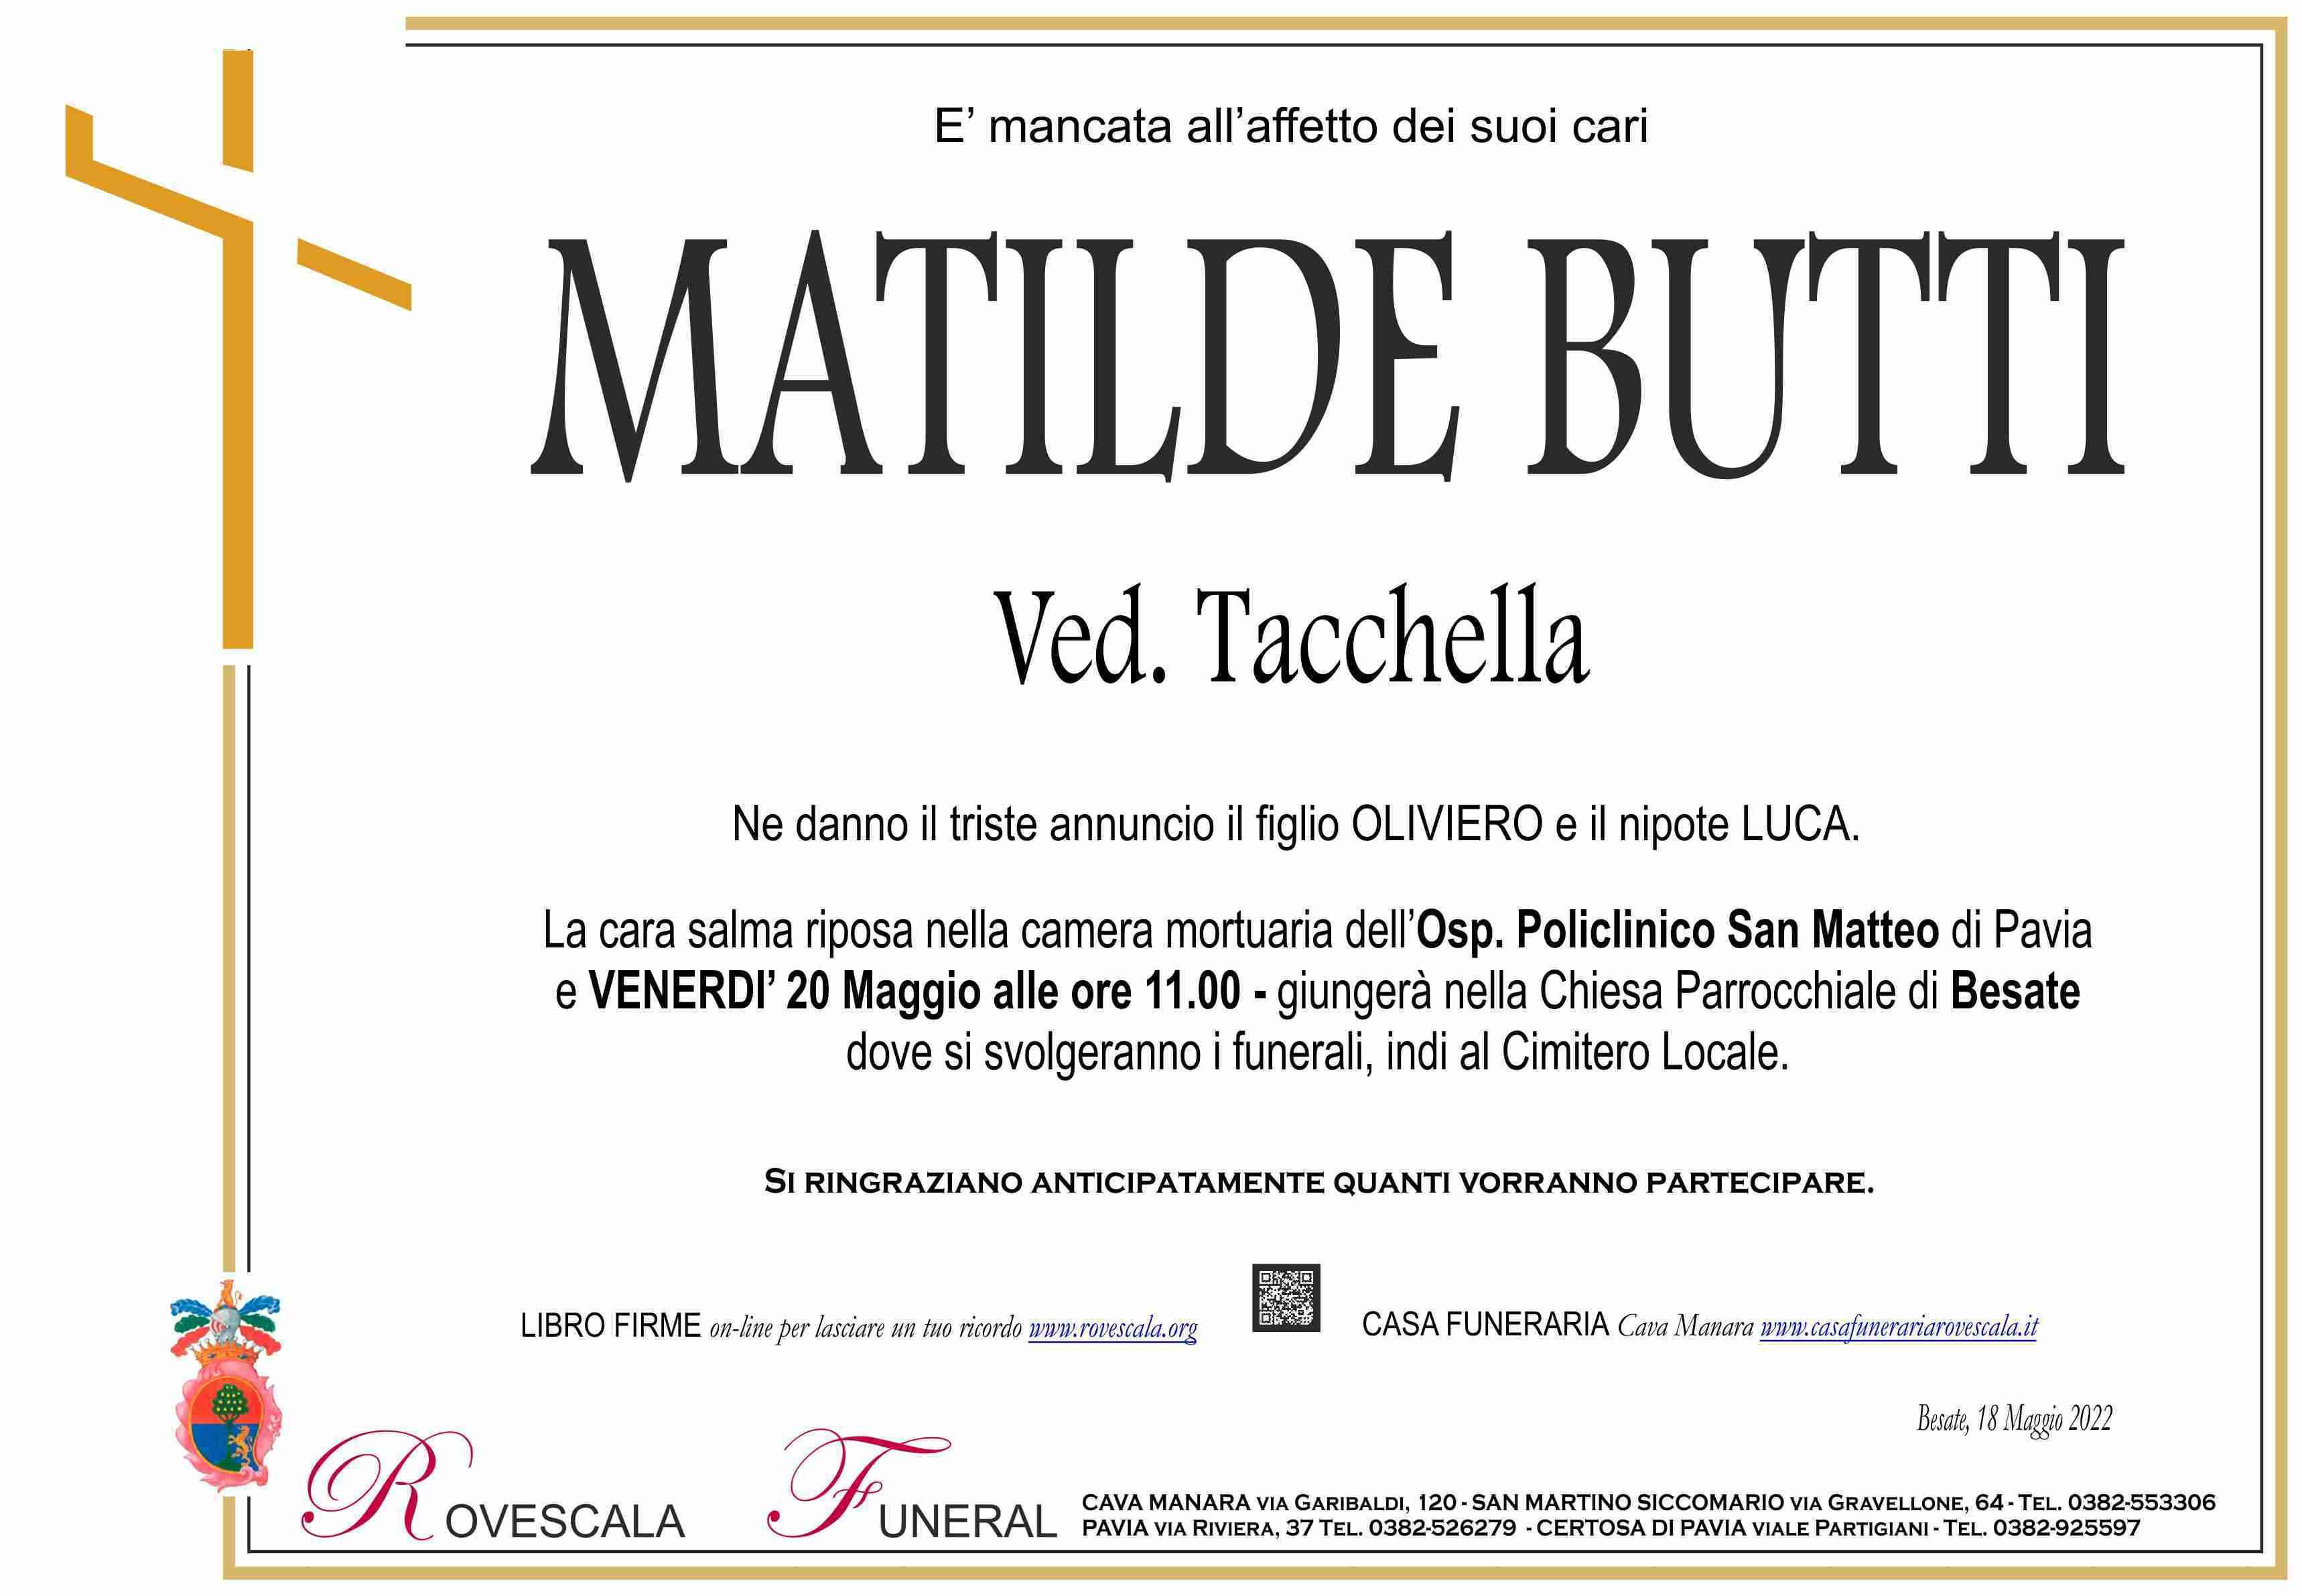 Matilde Butti